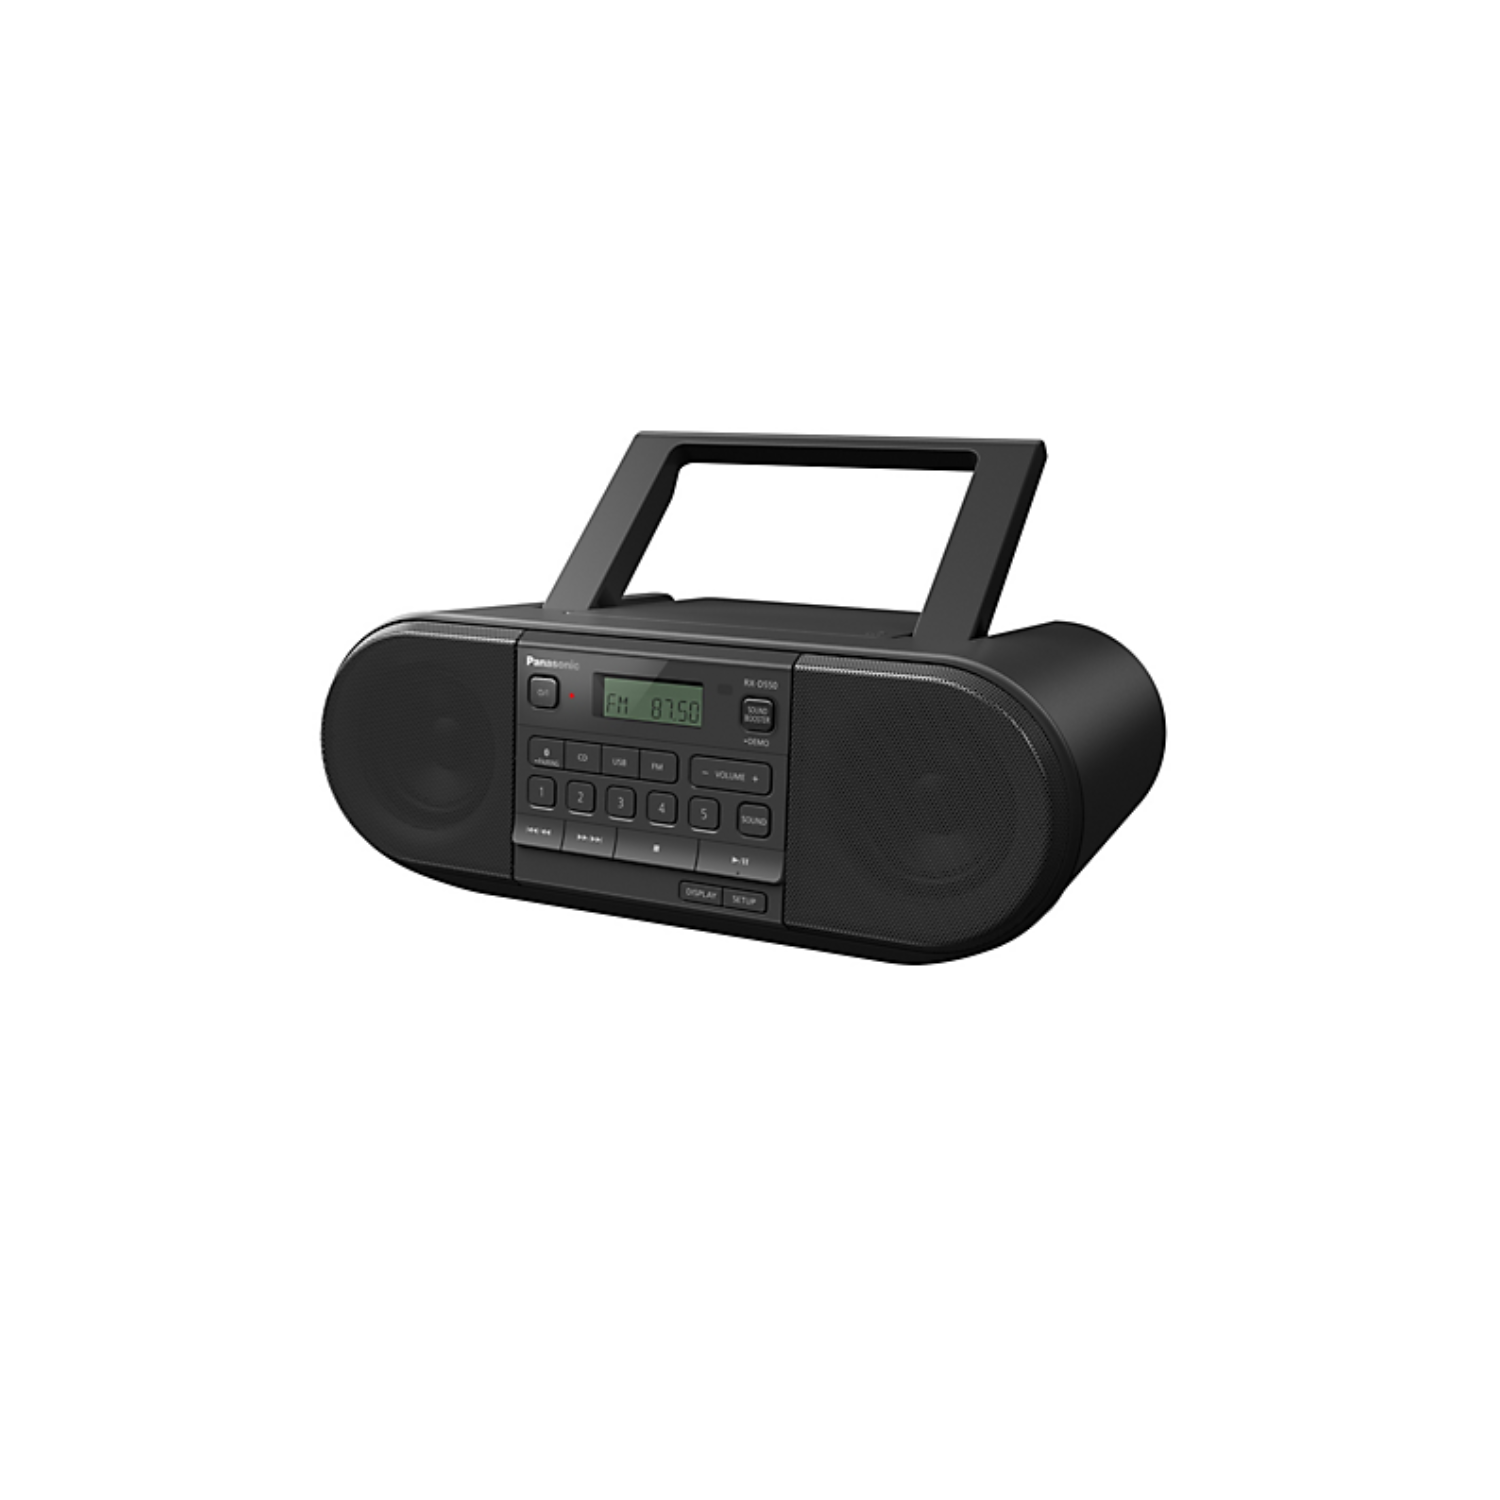 Radio portable Panasonic RX-D550 avec CD, Bluetooth et USB - Boîte endommagée